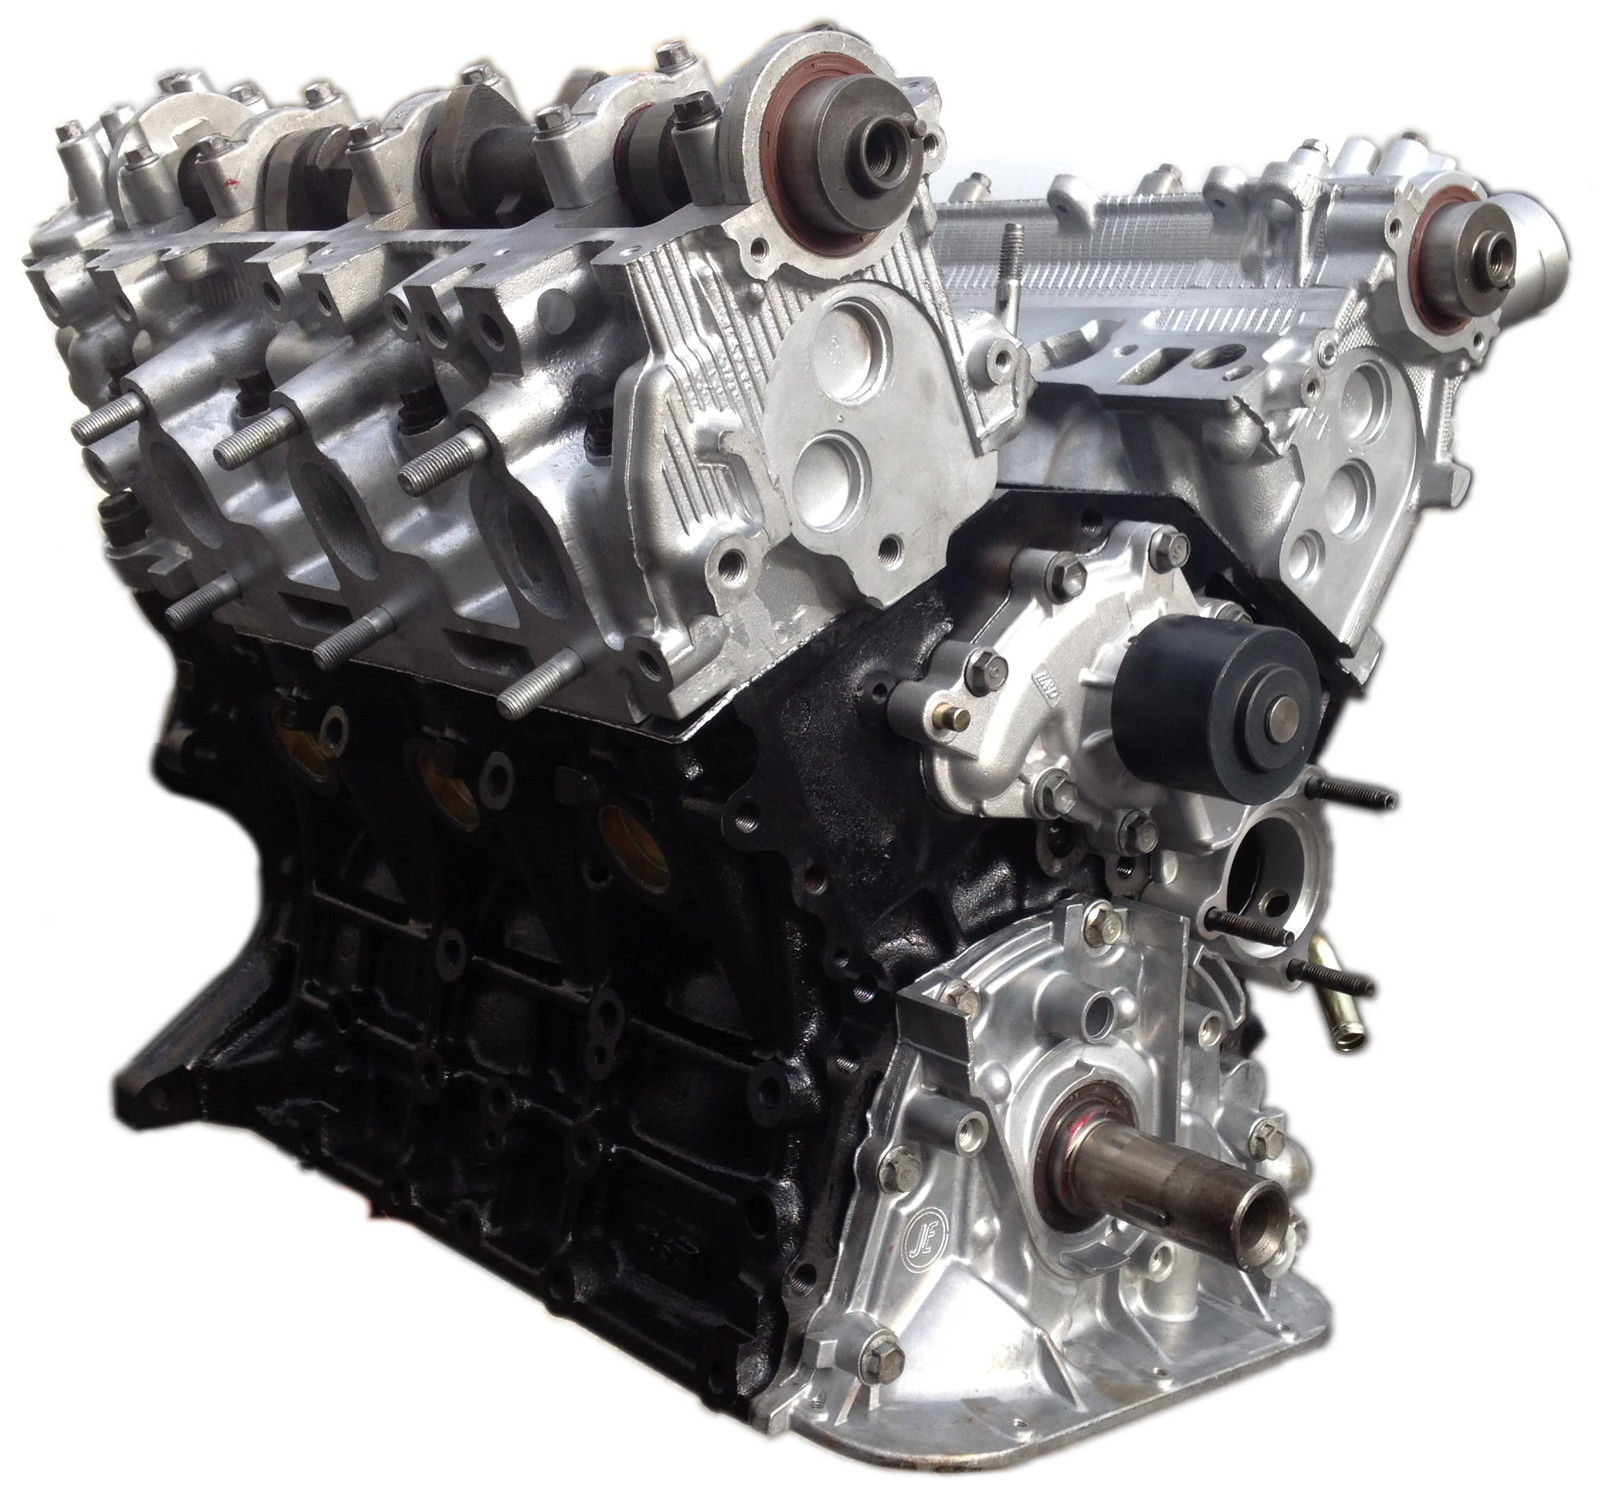 Toyota 3VZ rebuilt engine for 